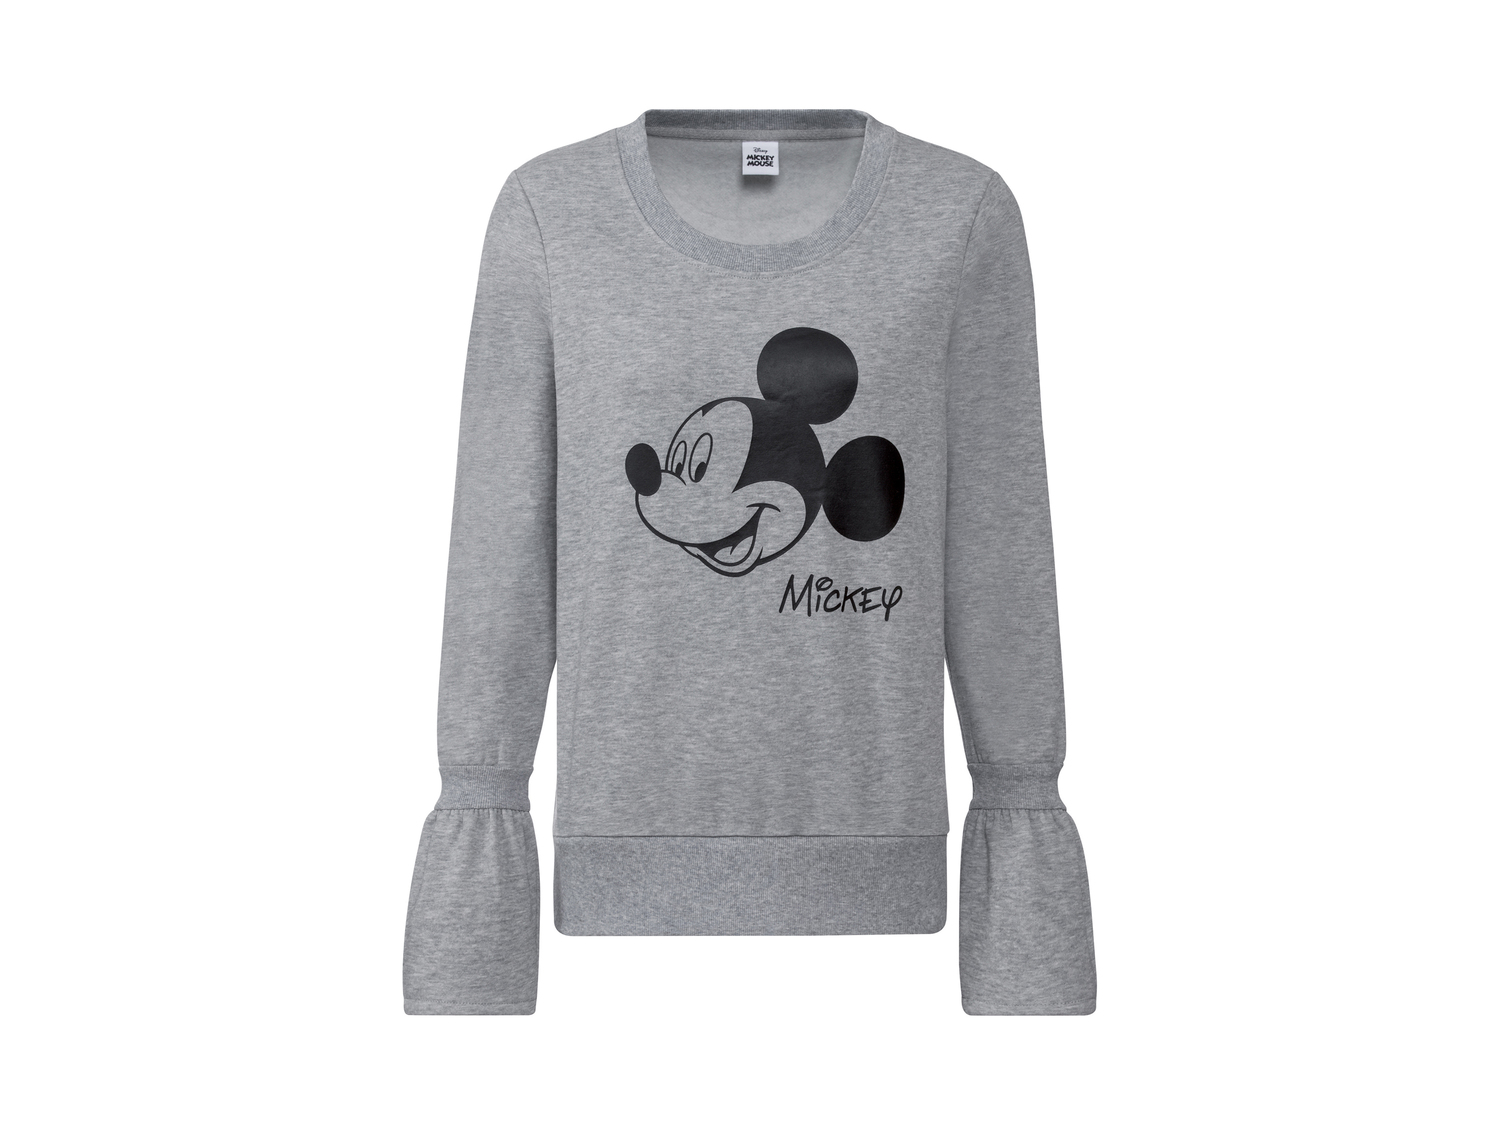 Felpa da donna Minnie, Mickey Mouse Oeko-tex, prezzo 9.99 € 
Misure: S-L
Taglie ...